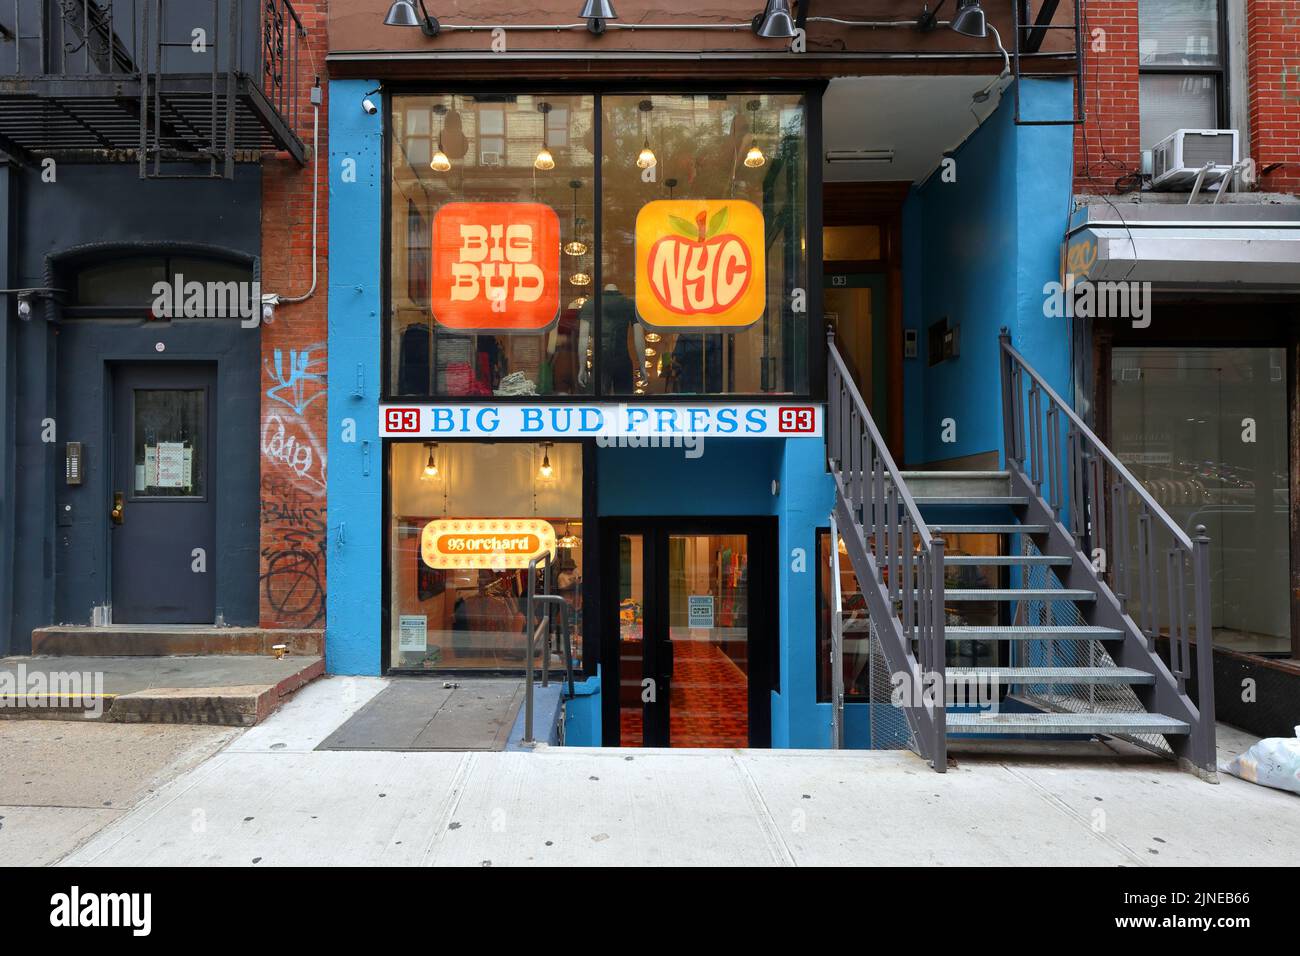 Big Bud Press, 93 Orchard St. New York, NY. Außenfassade eines geschlechtsneutralen Bekleidungsladens in Manhattans Lower East Side Nachbarschaft. Stockfoto